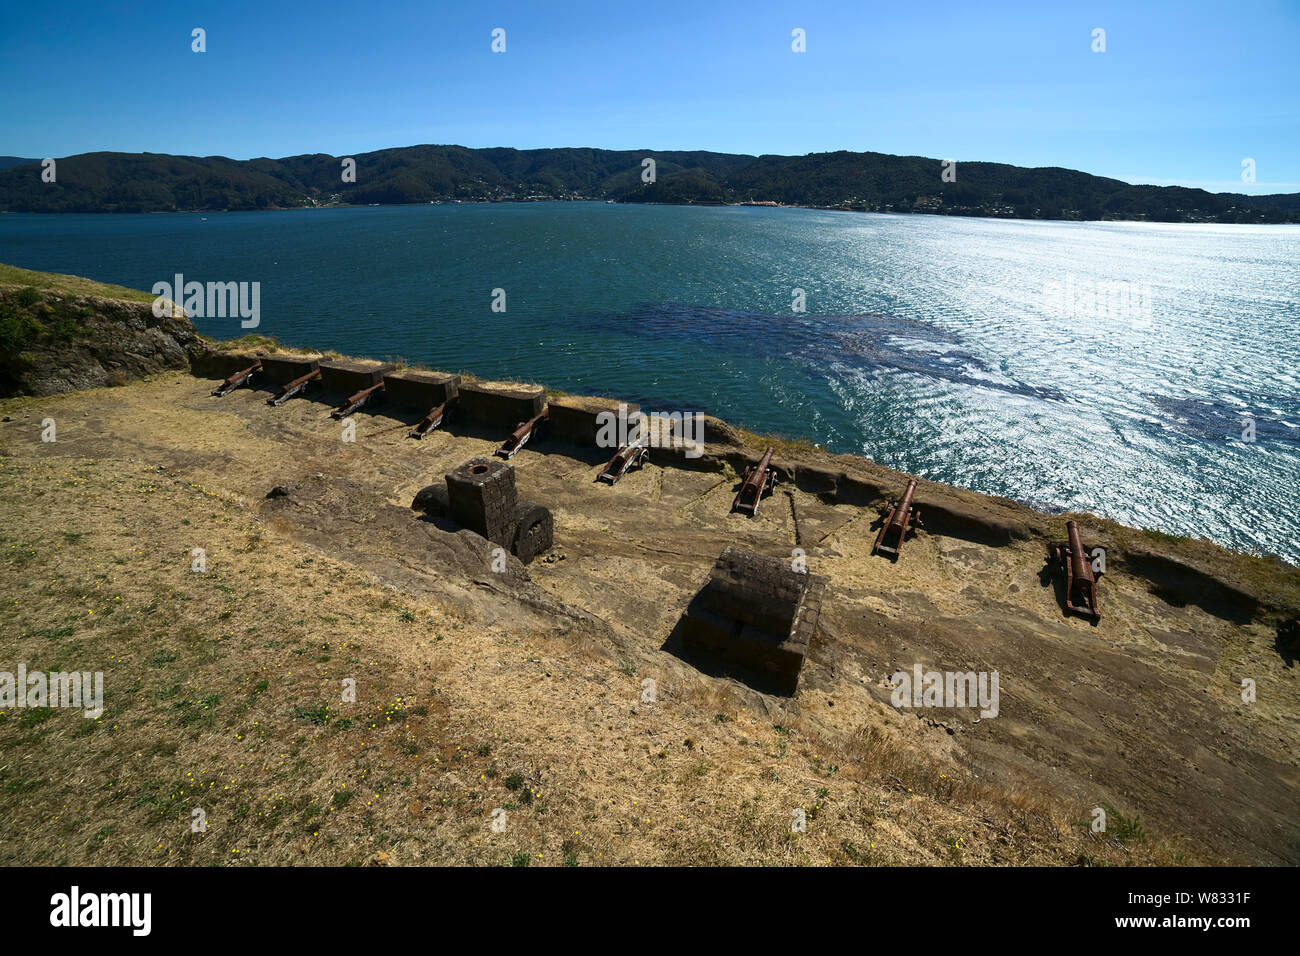 NIEBLA, CHILE - Februar 2, 2016: Kanonen der Niebla Festung mit Blick auf die valdivia Fluss am 2. Februar 2016 in Niebla, Chile Stockfoto